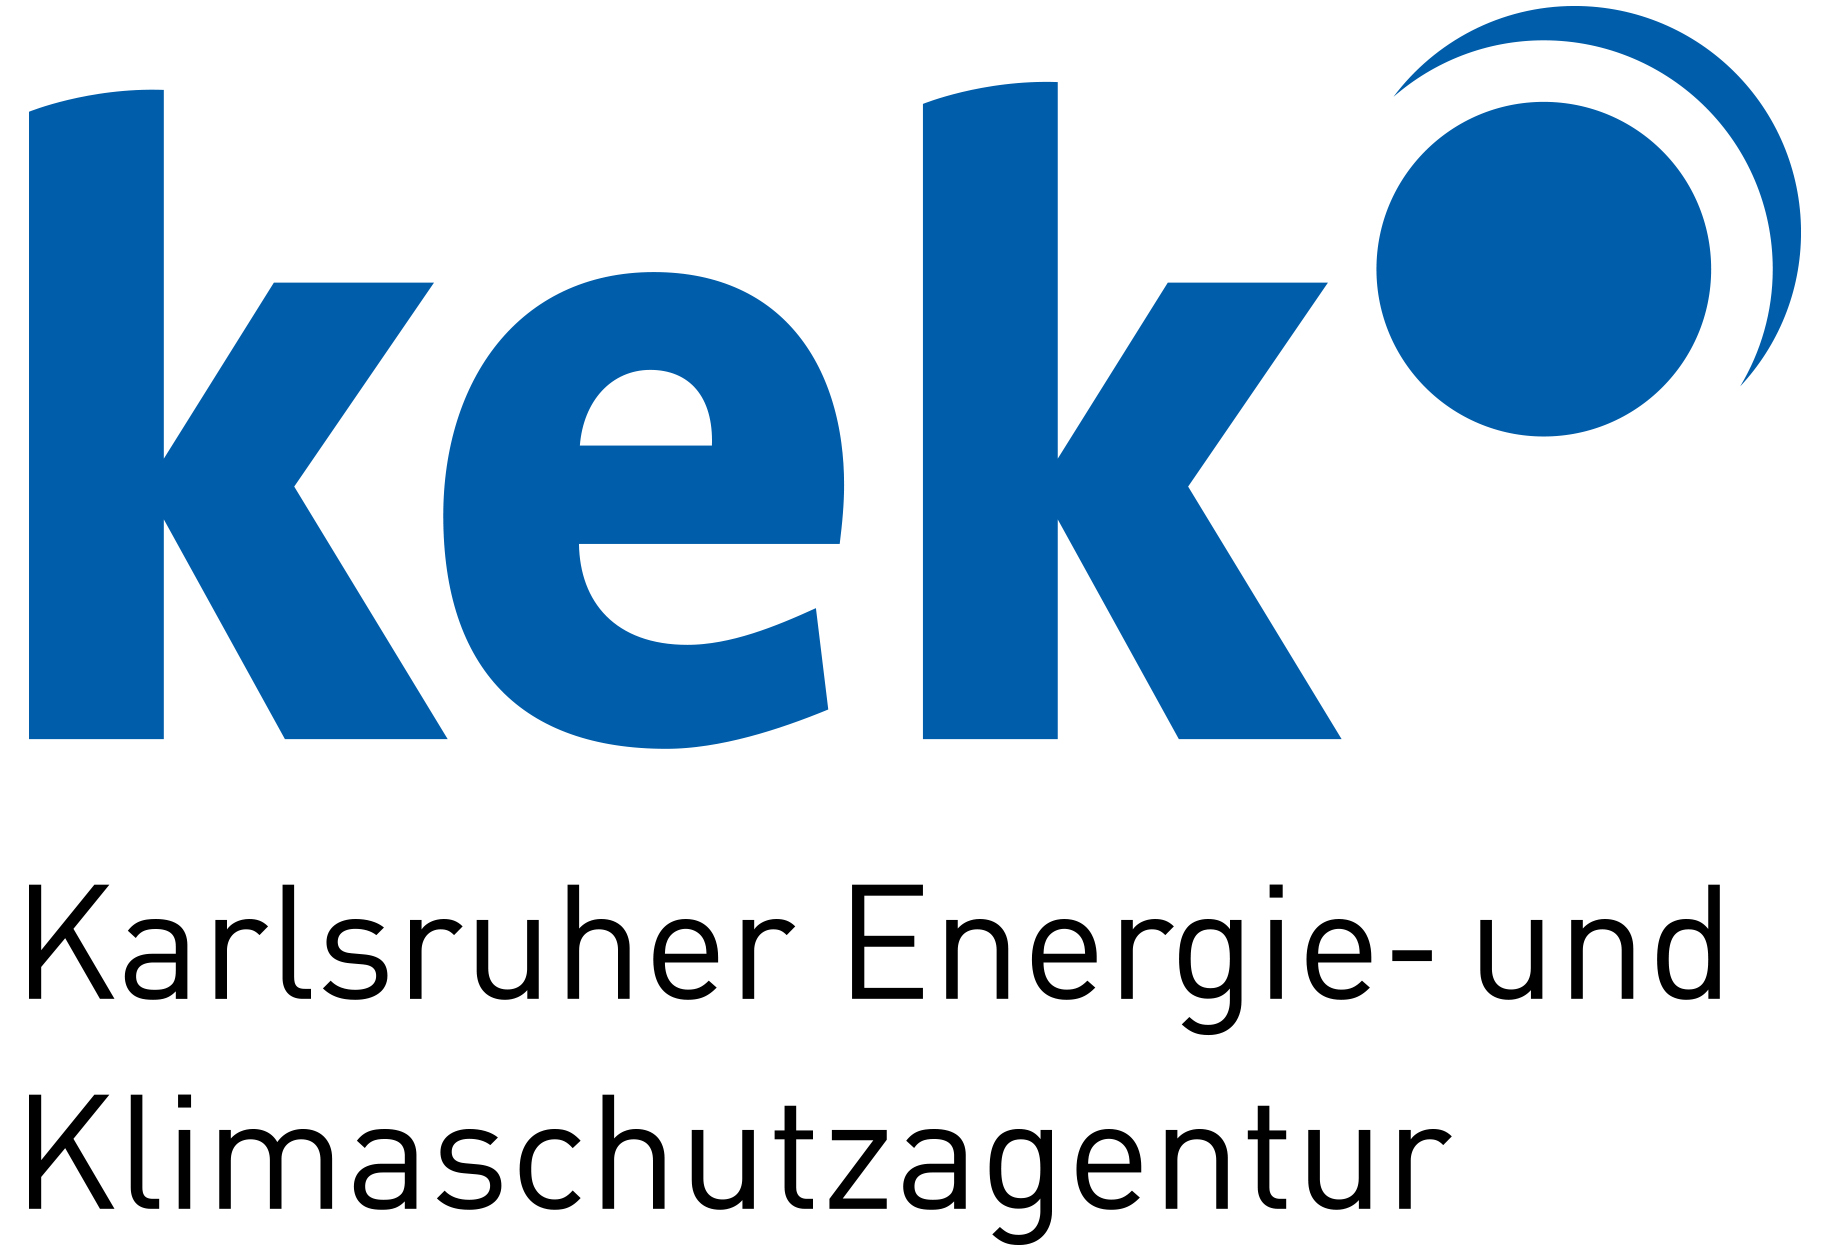 KEK Karlsruher Energie- und Klimaschutzagentur